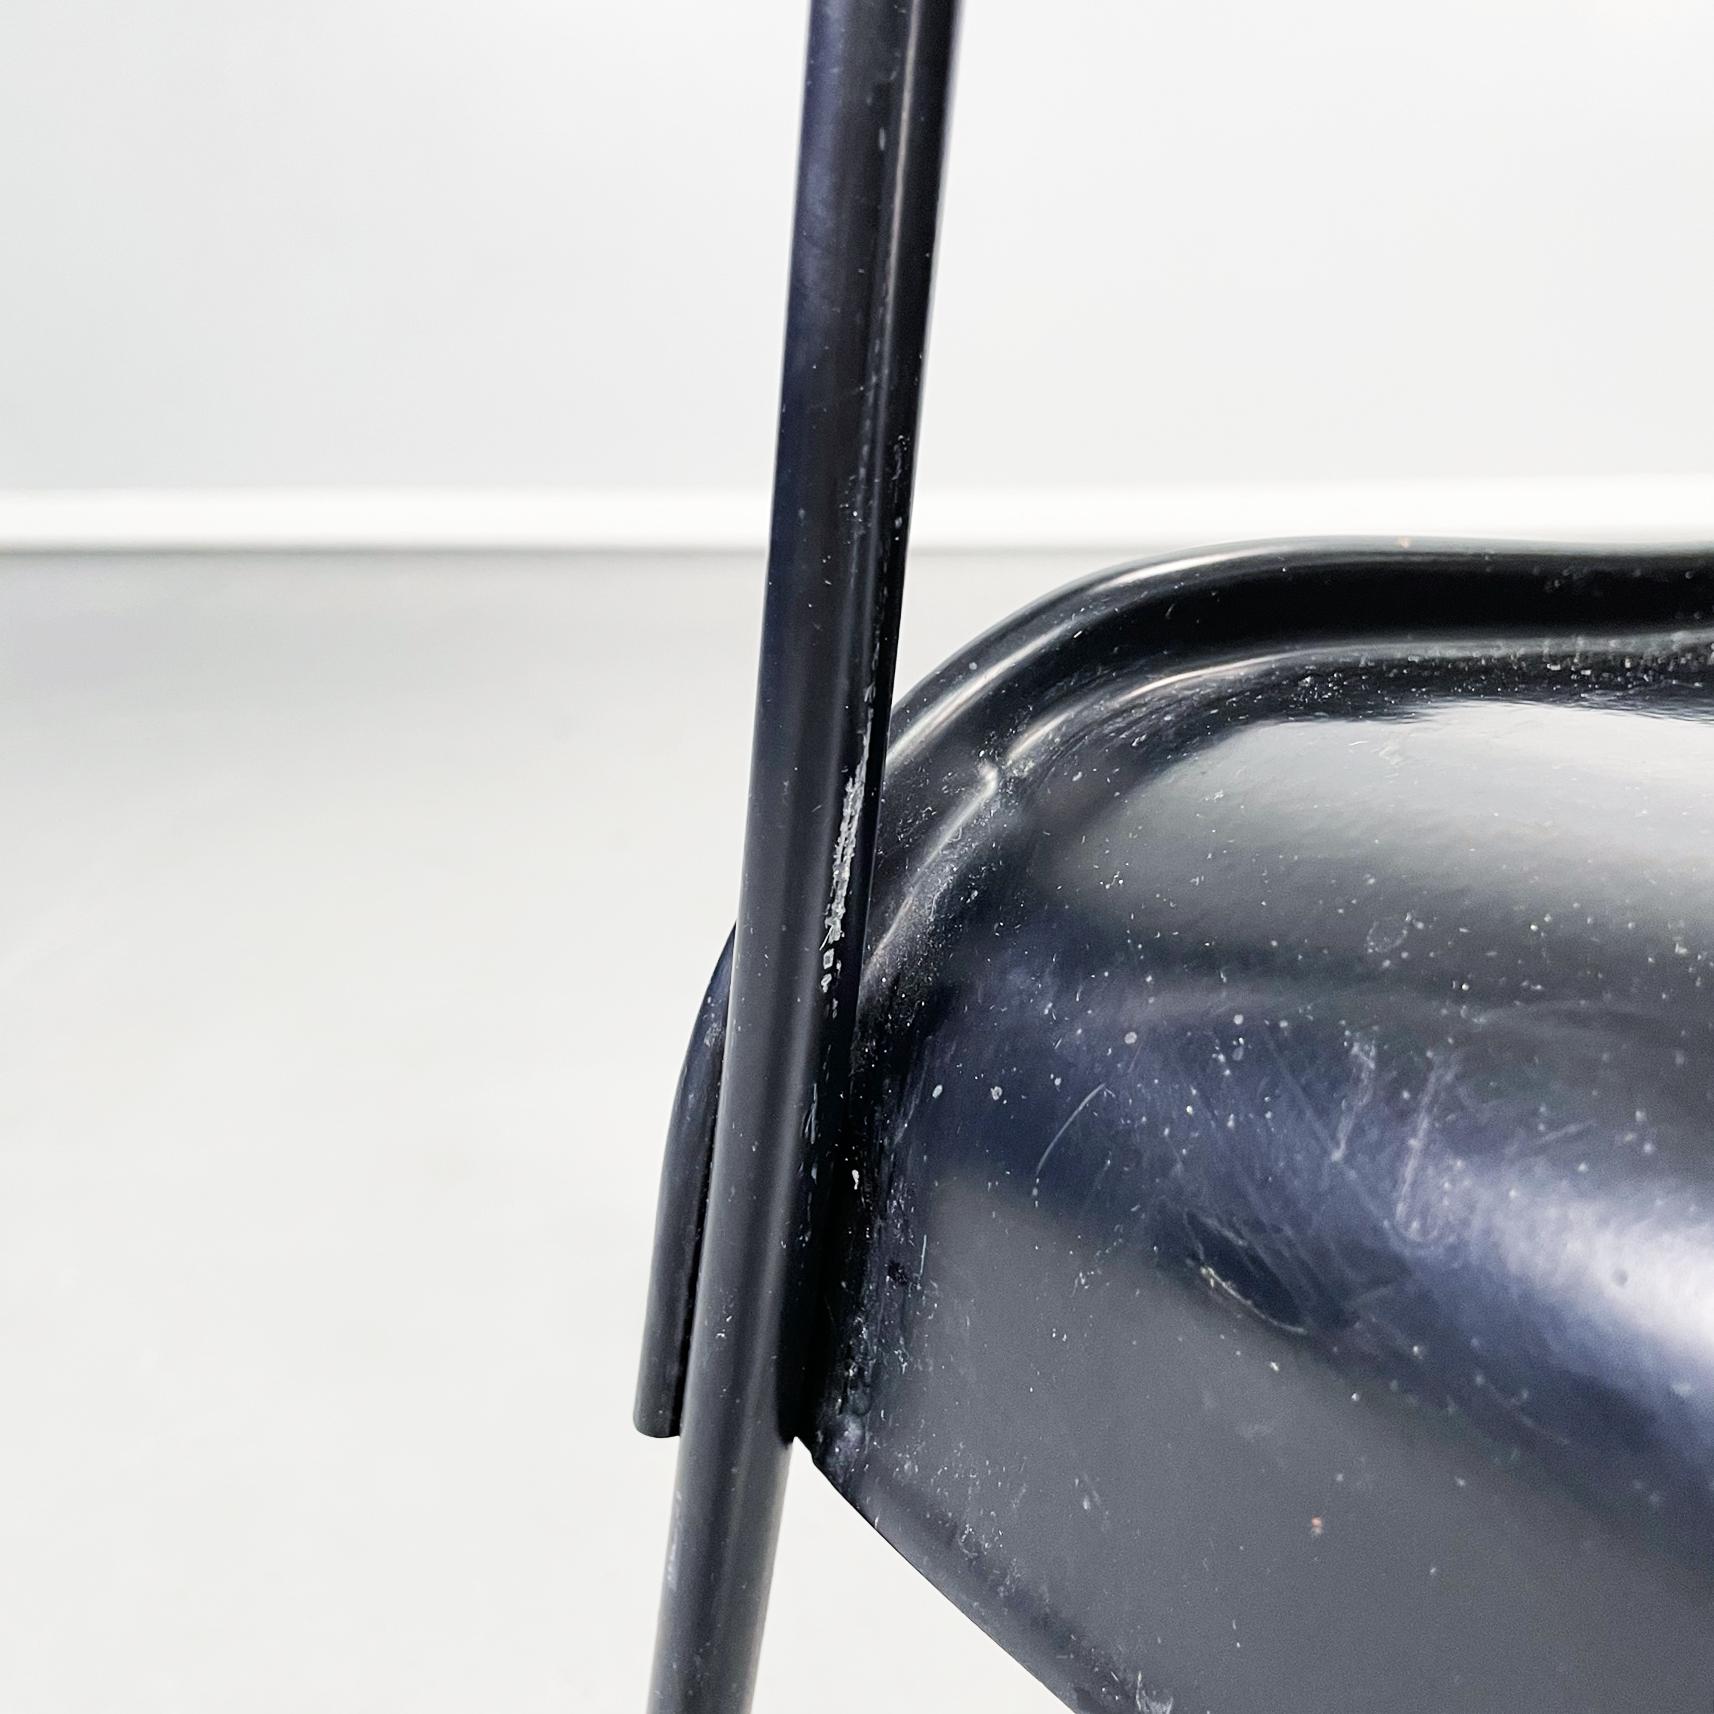 Italian Modern Black Steel Chairs Omstak by Rodney Kinsman Bieffeplast, 1970s For Sale 12